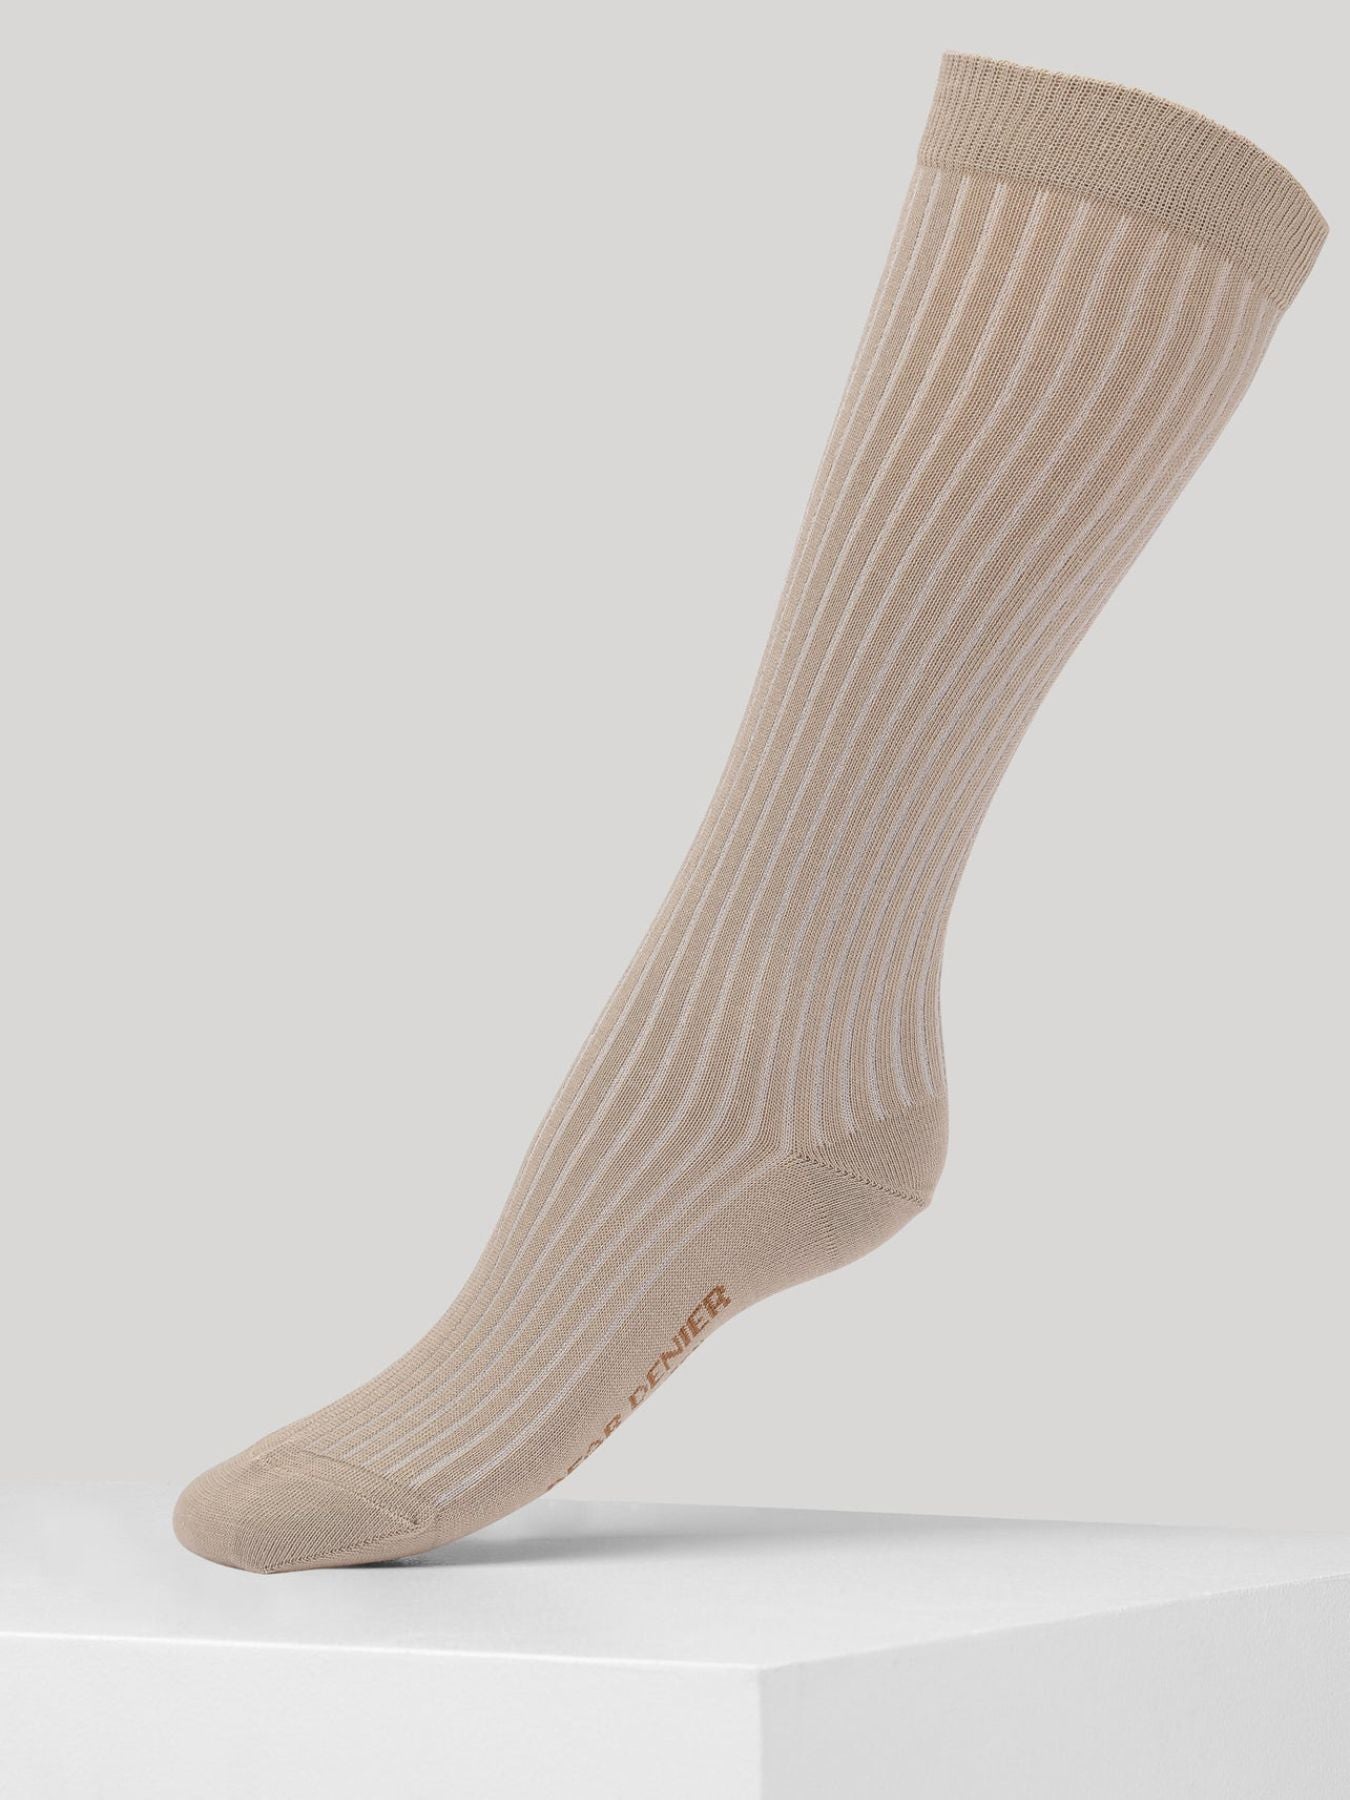 Merino Knee High Socks - Natural Fiber Clothing